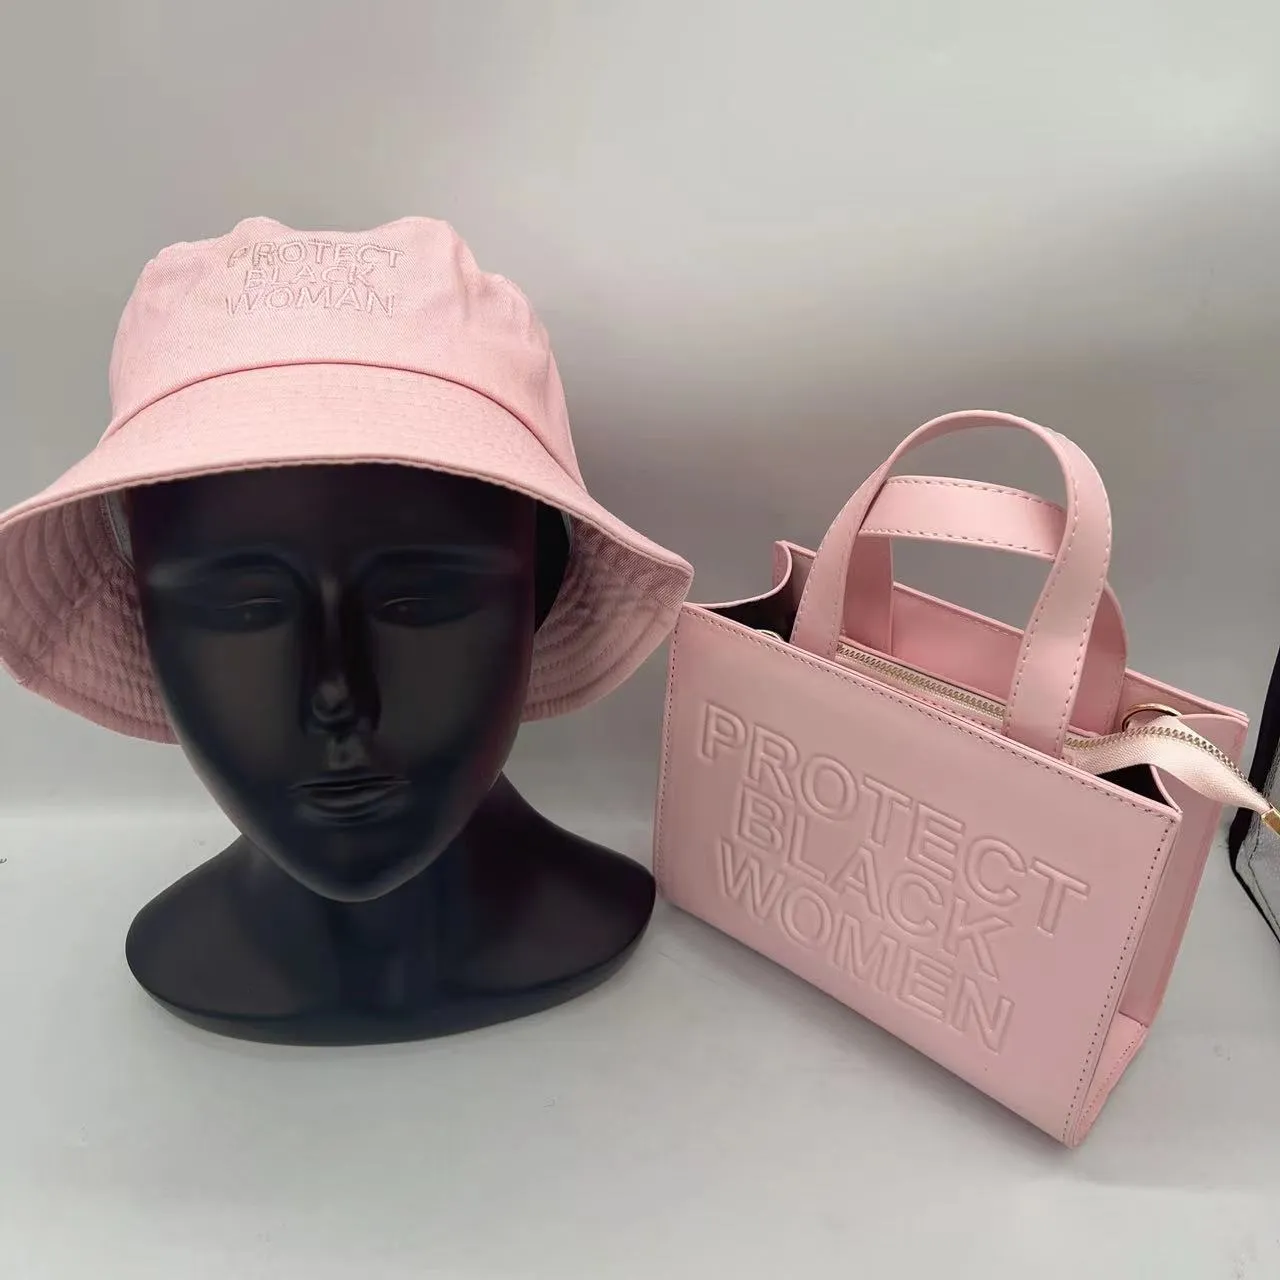 Moda feminina bolsa com chapéus sacola multi cores totes bolsas de ombro femininas e bonés 7519051